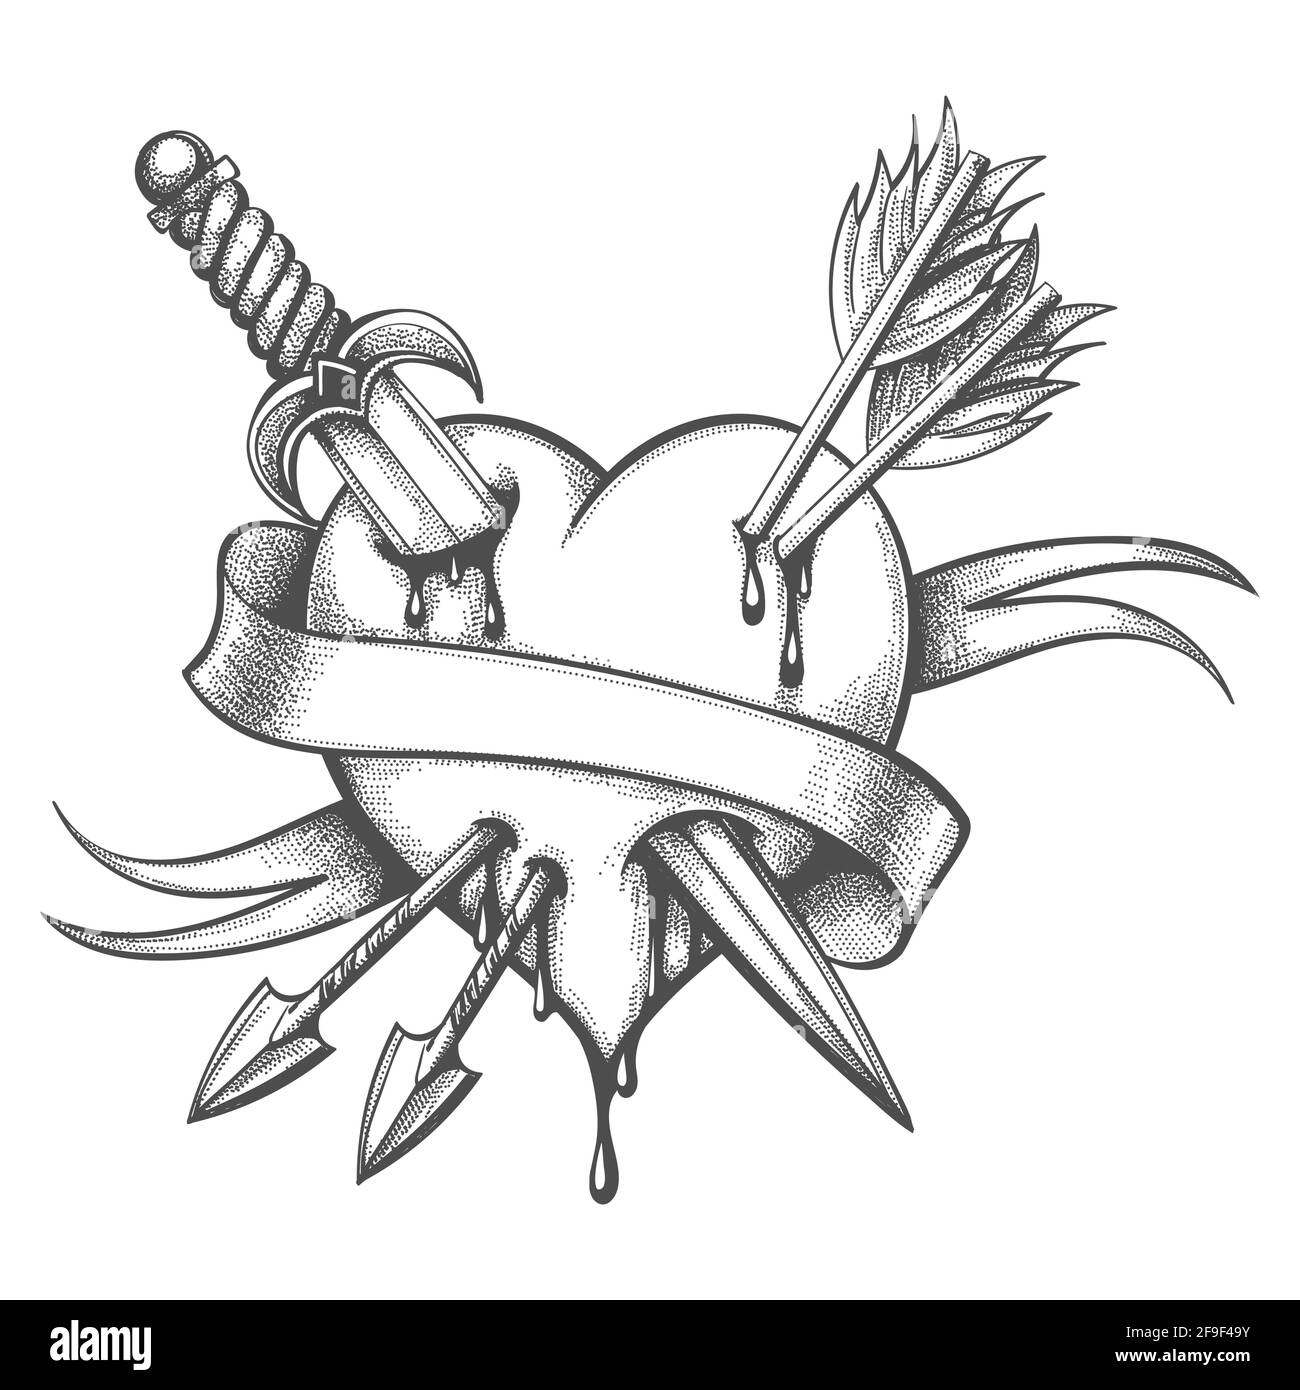 Tatouage de coeur percé par couteau et flèches dessinées en style gravure. Illustration vectorielle. Illustration de Vecteur